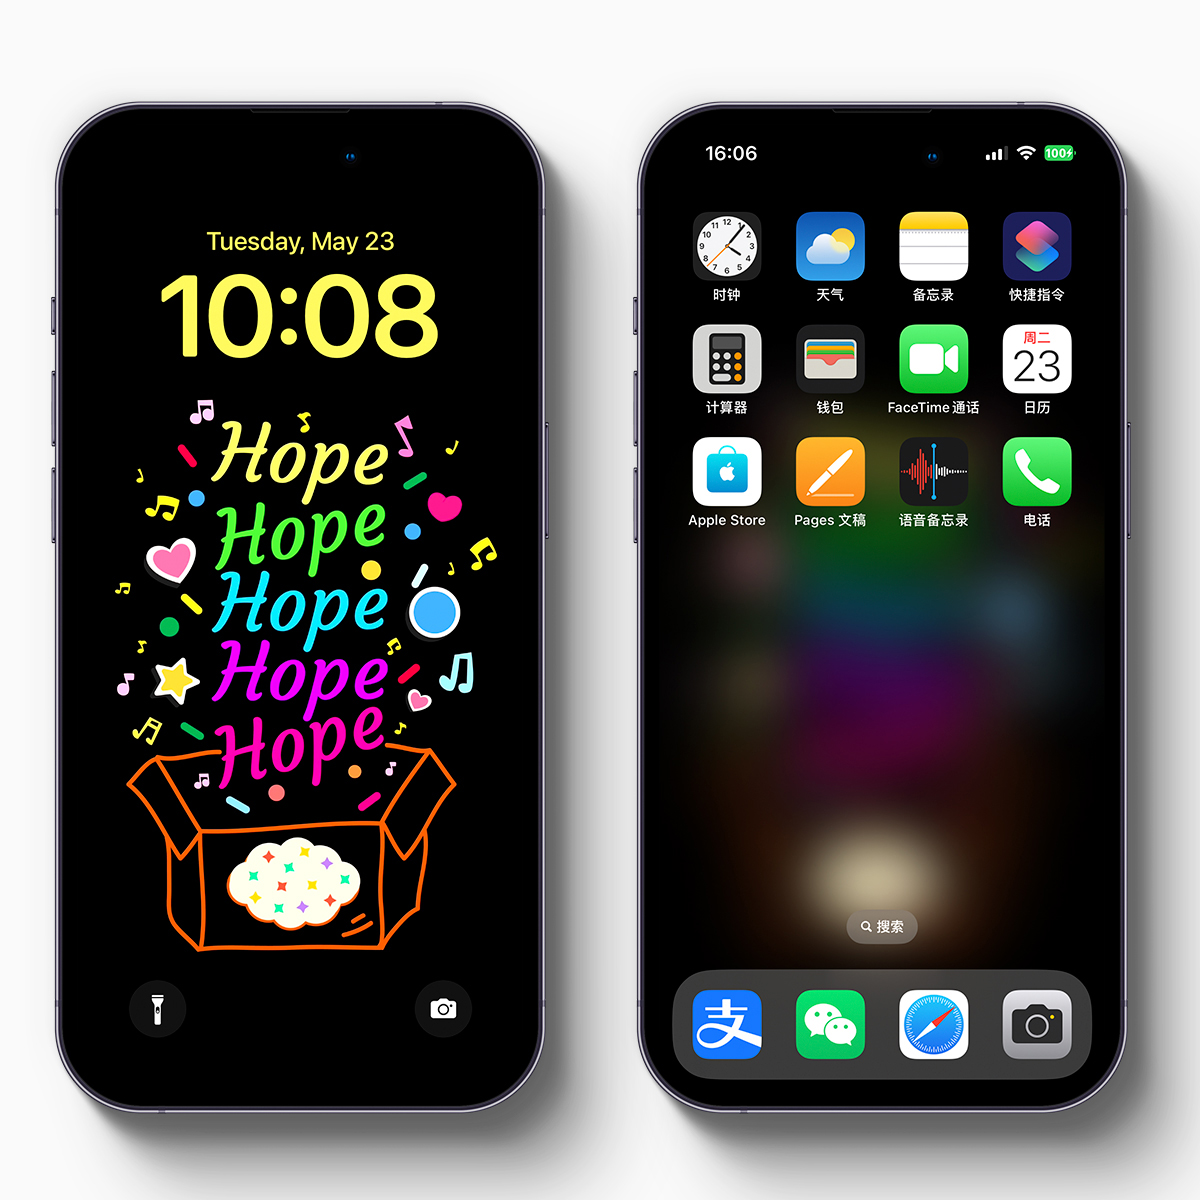 HOPE.iPhone手机壁纸屏保狂喜彩色手绘治愈原创可爱